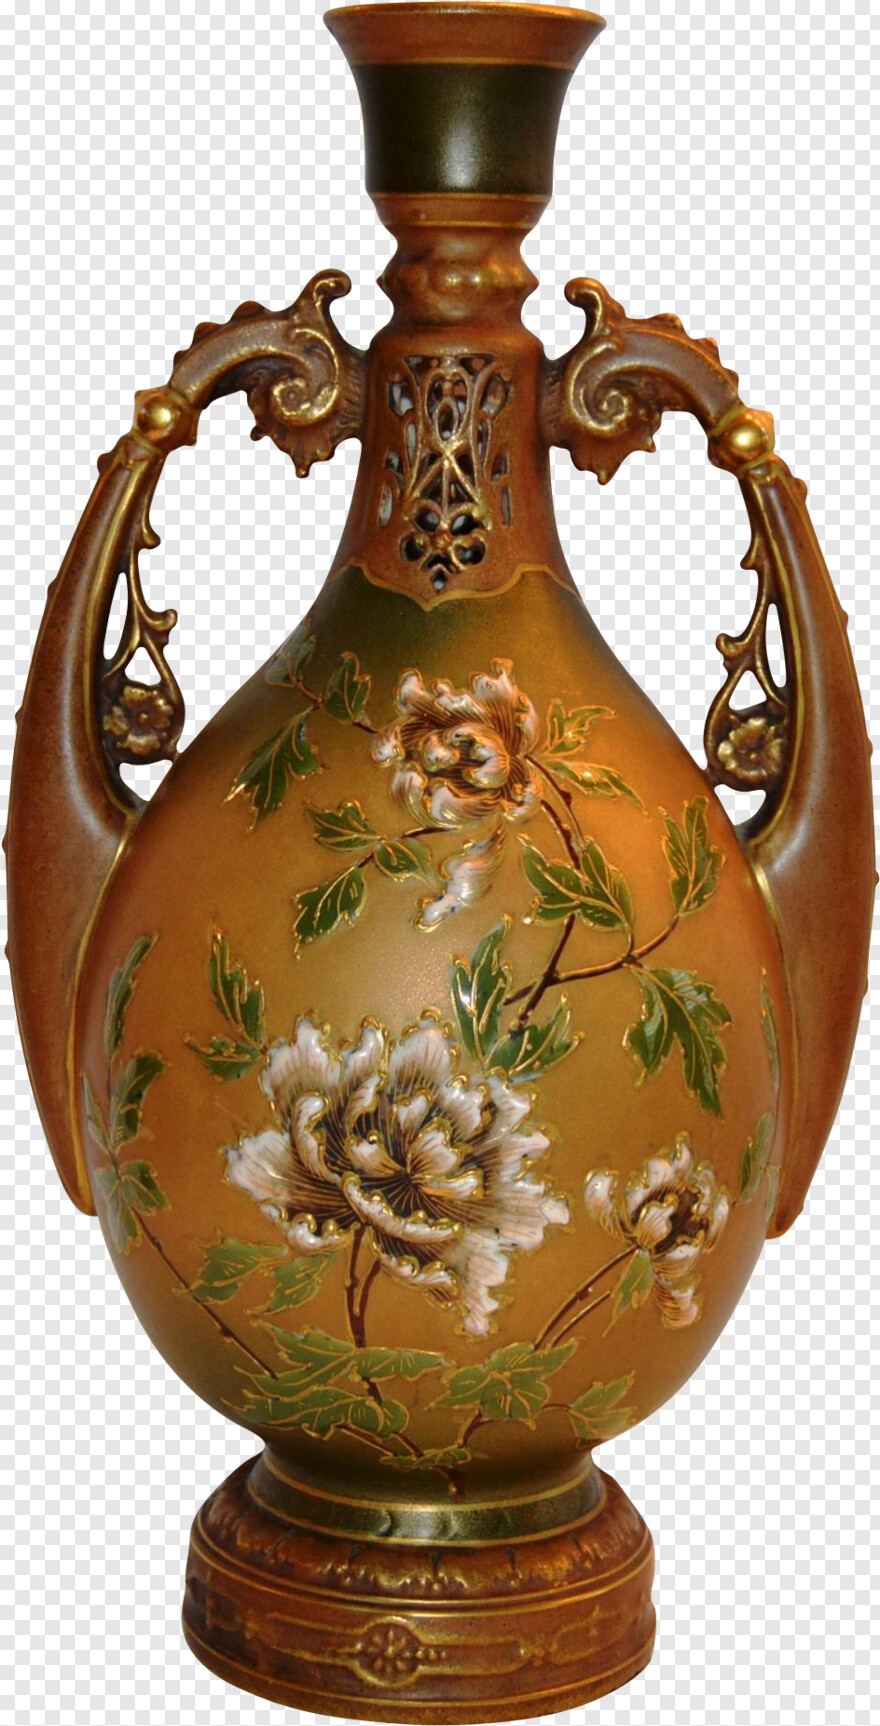 flower-vase # 473160